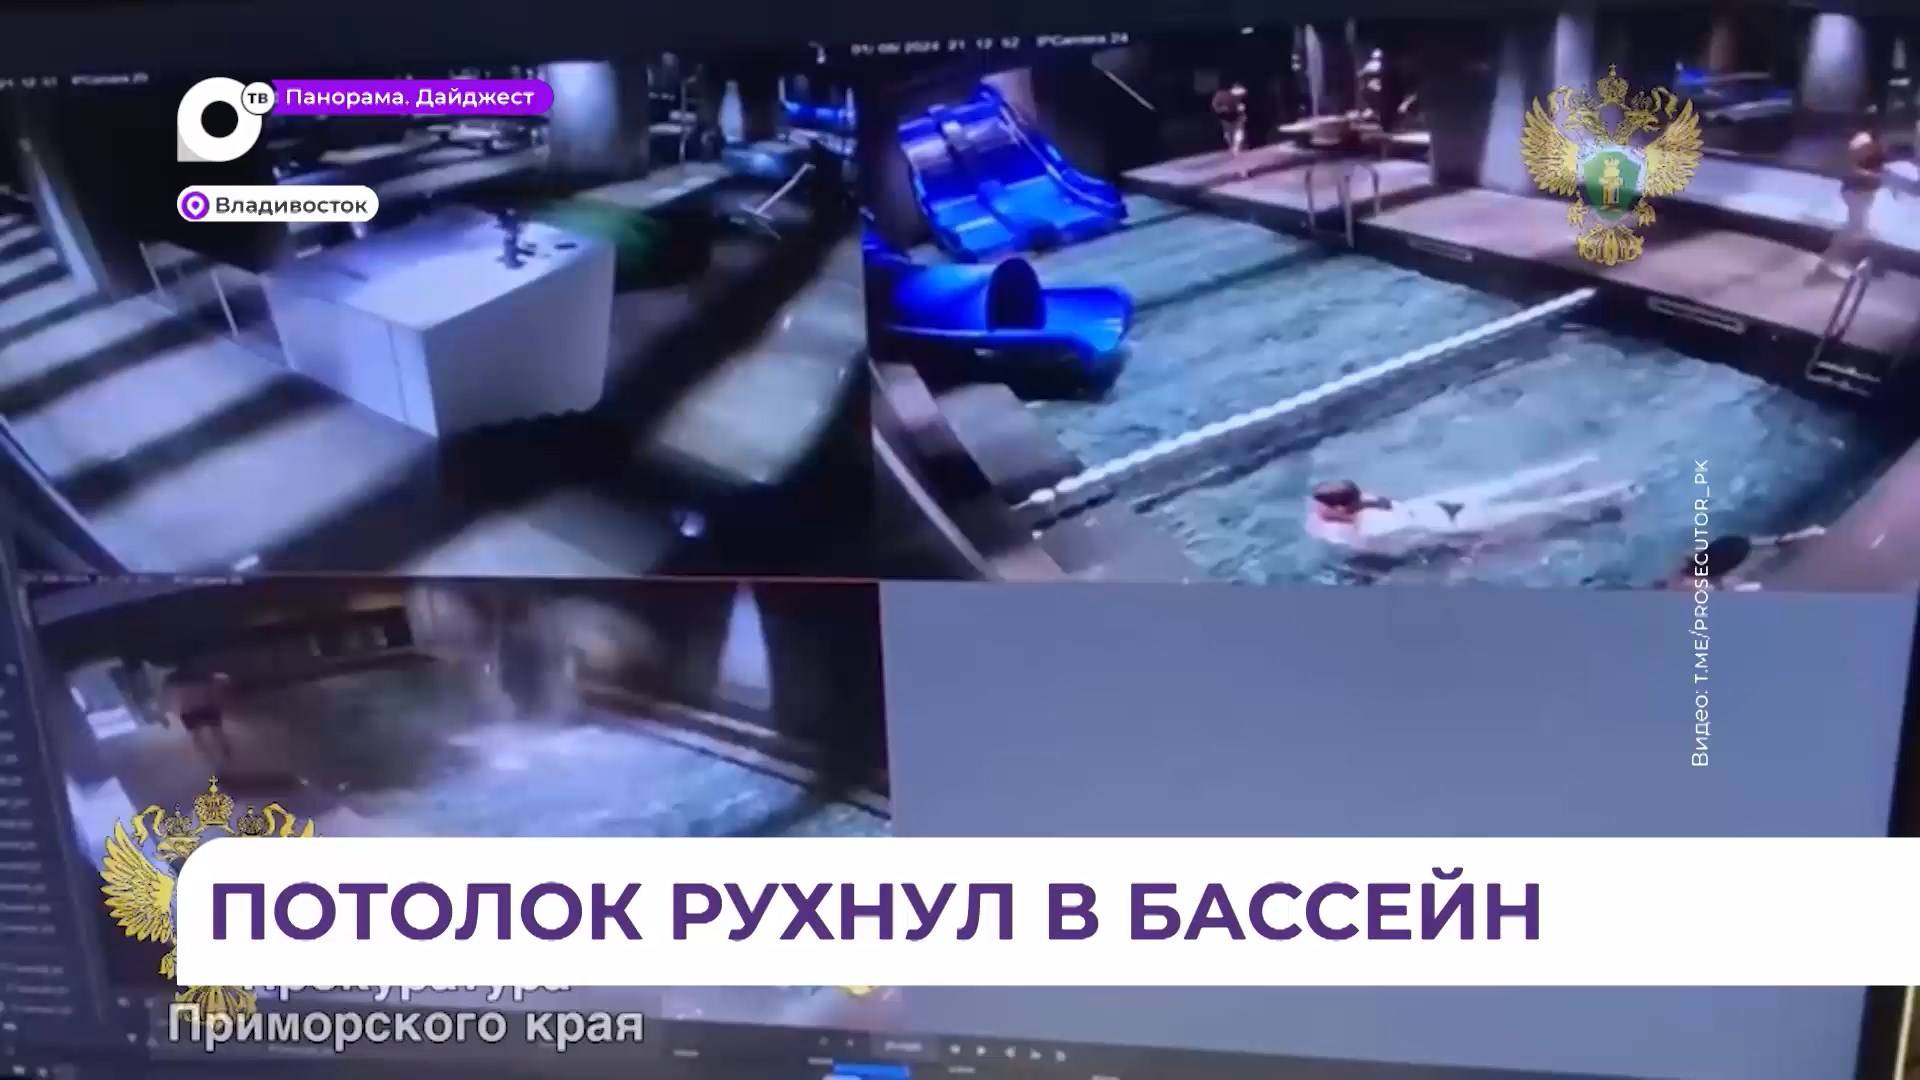 Следком возбудил дело по факту обрушения потолка в водном комплексе «Акватория» во Владивостоке